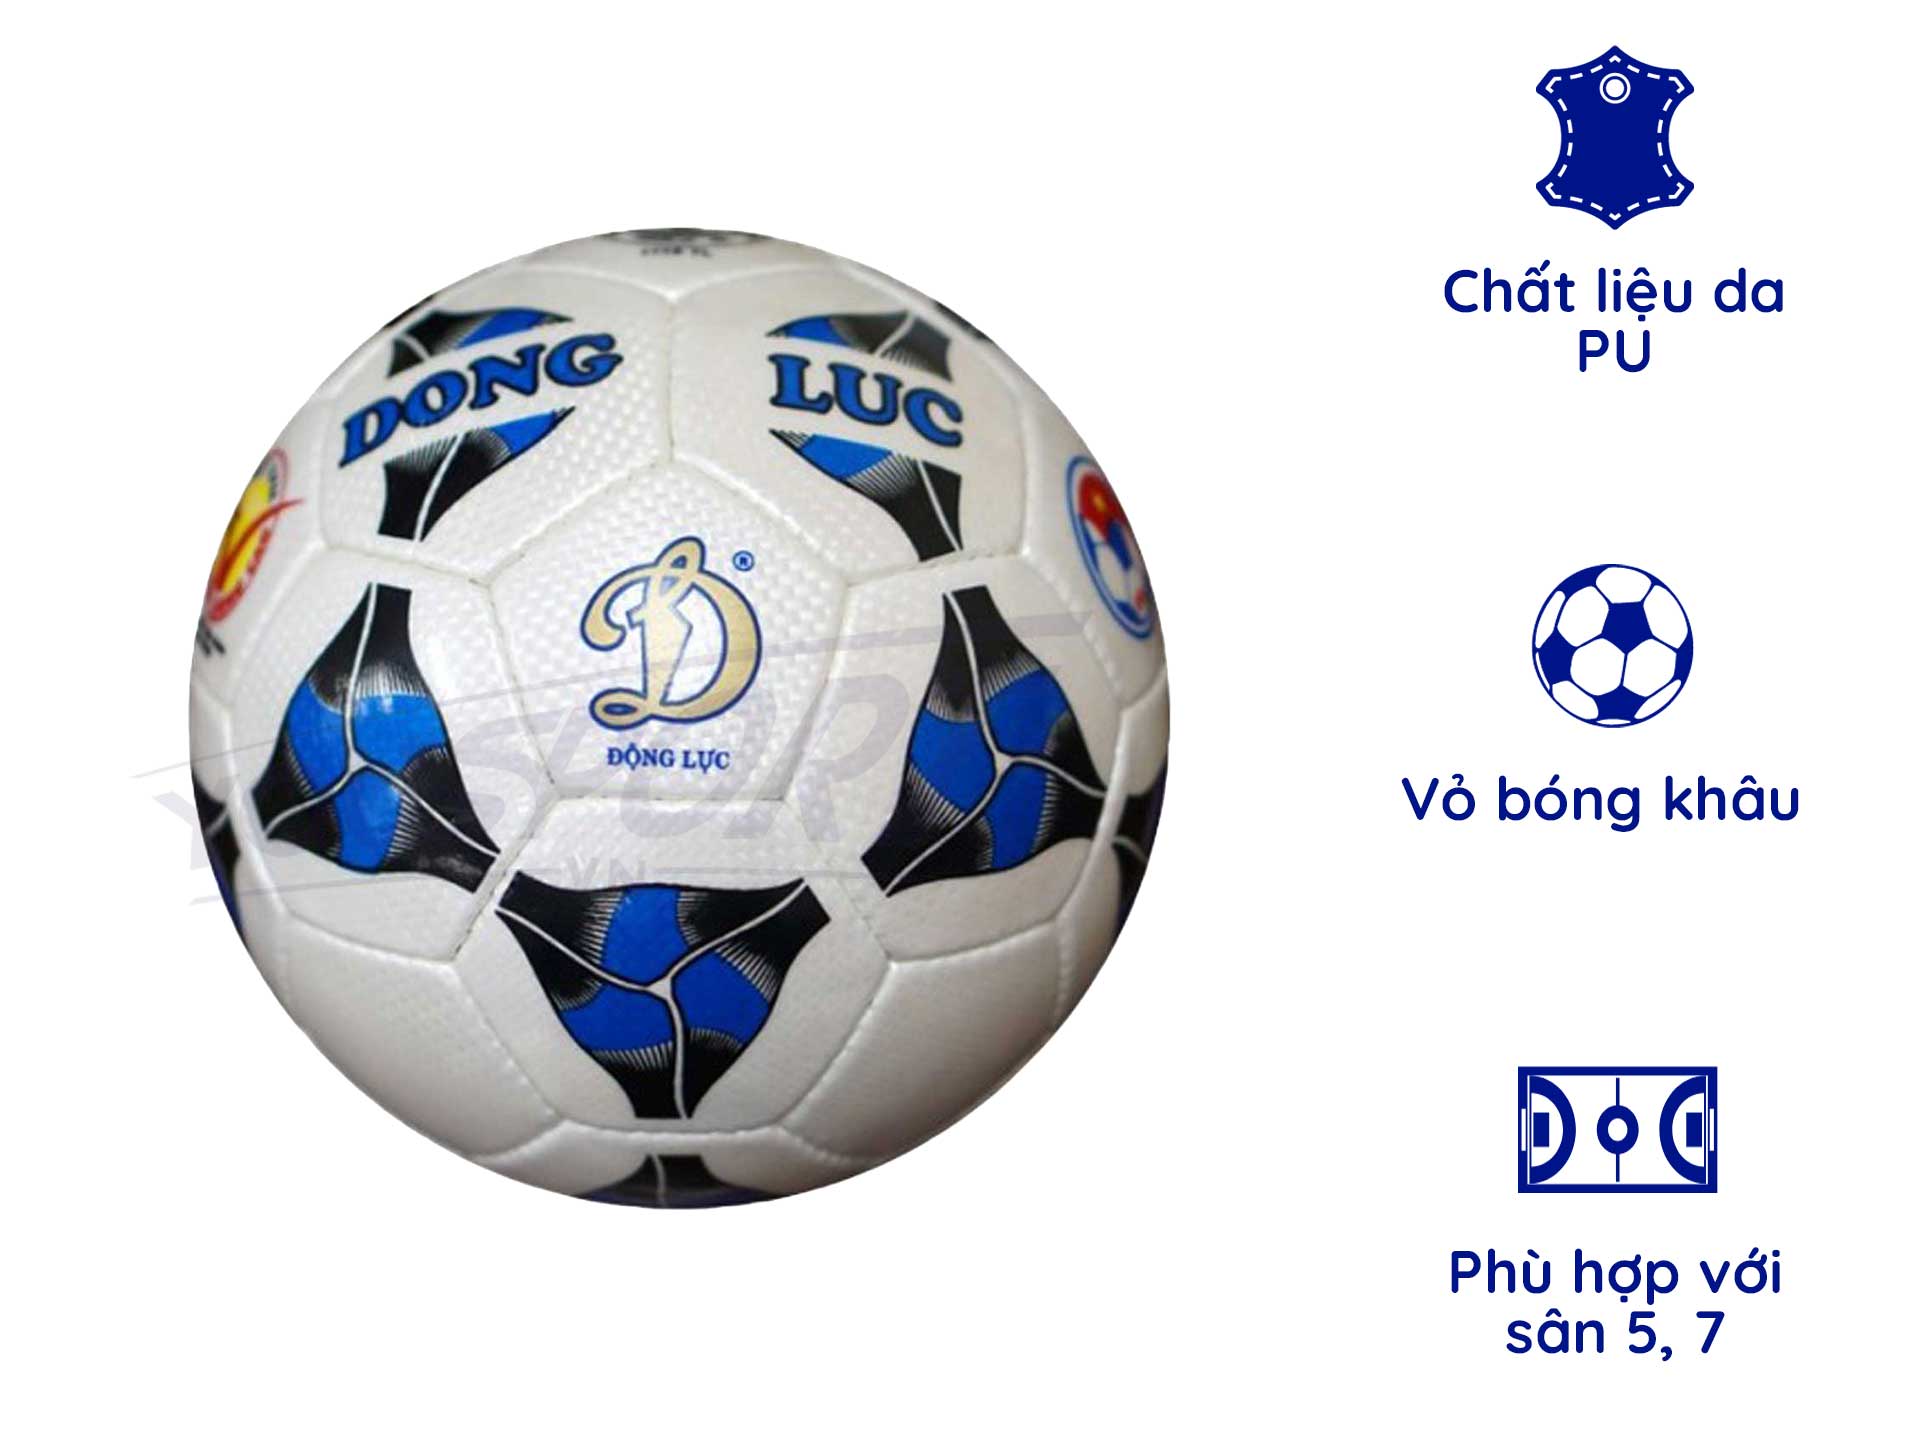 UCV 3.05 được Liên đoàn bóng đá Việt Nam sử dụng như thế nào trong các giải đấu?